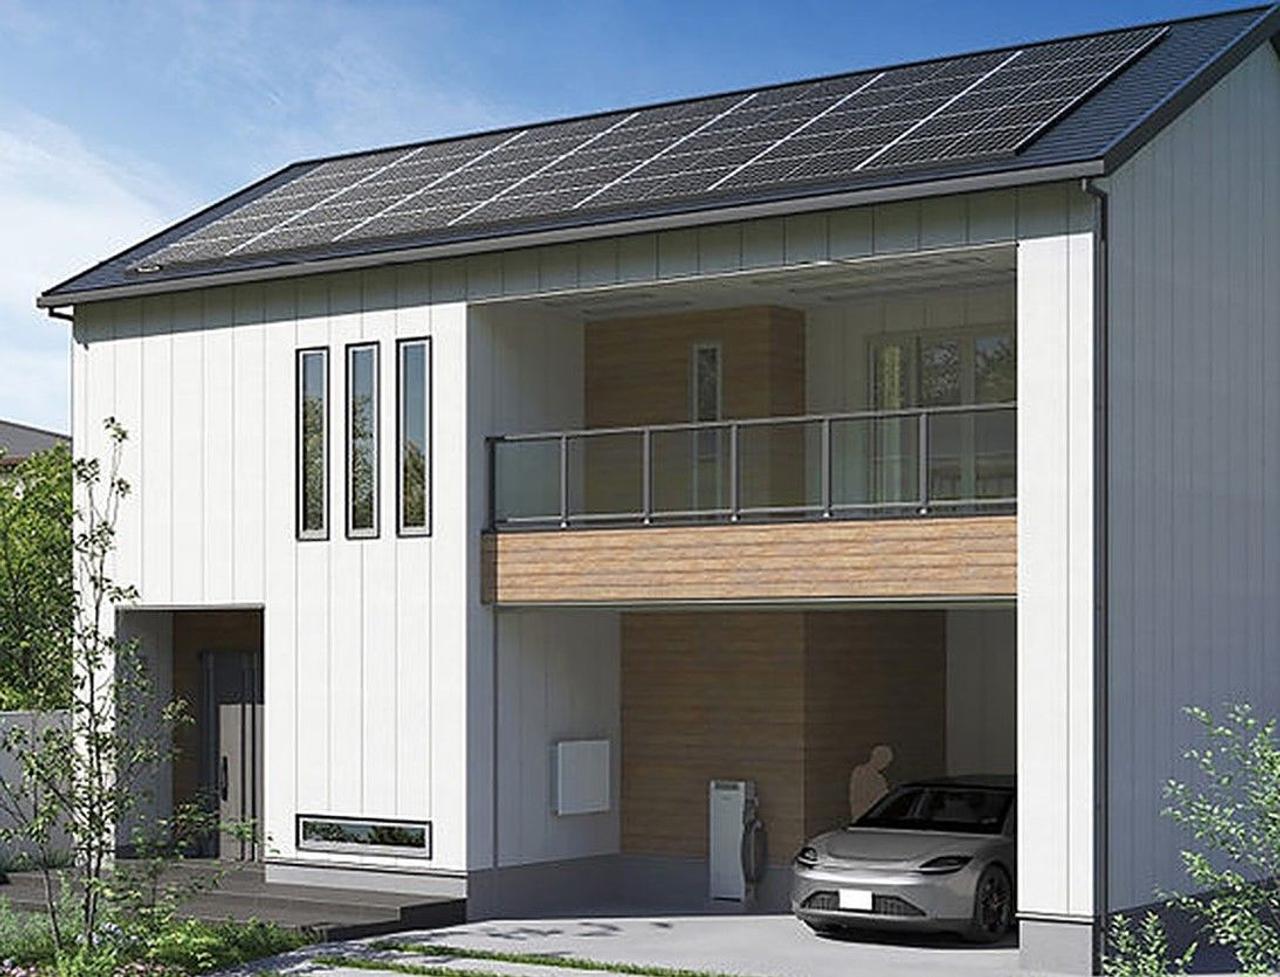 Panasonic представил систему «автомобиль-дом» для использования в домах с солнечными батареями